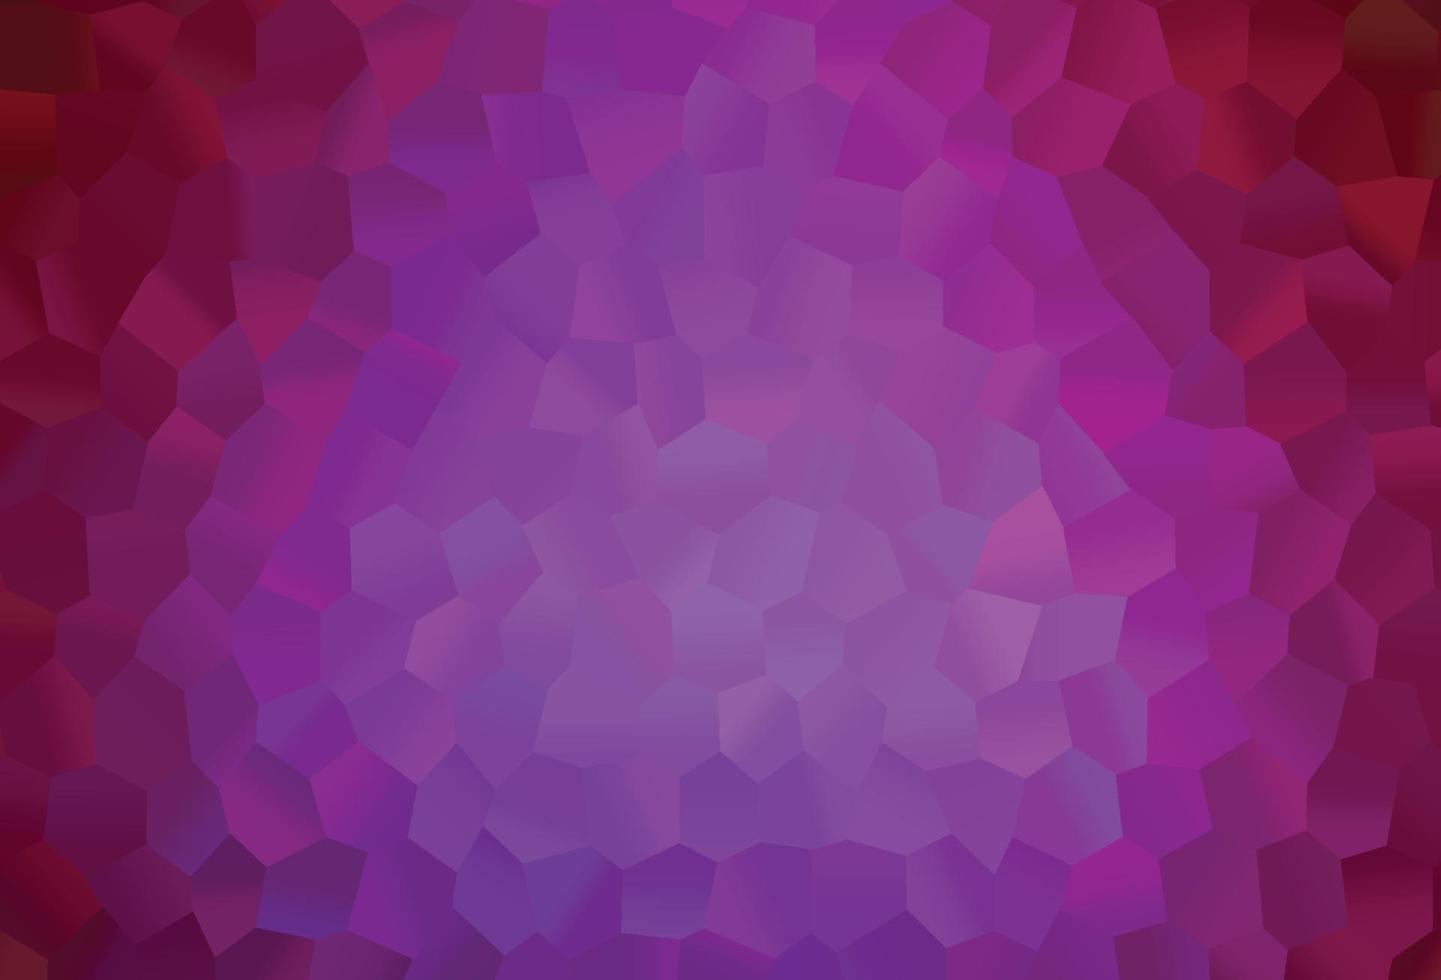 fond de vecteur violet clair avec des hexagones.